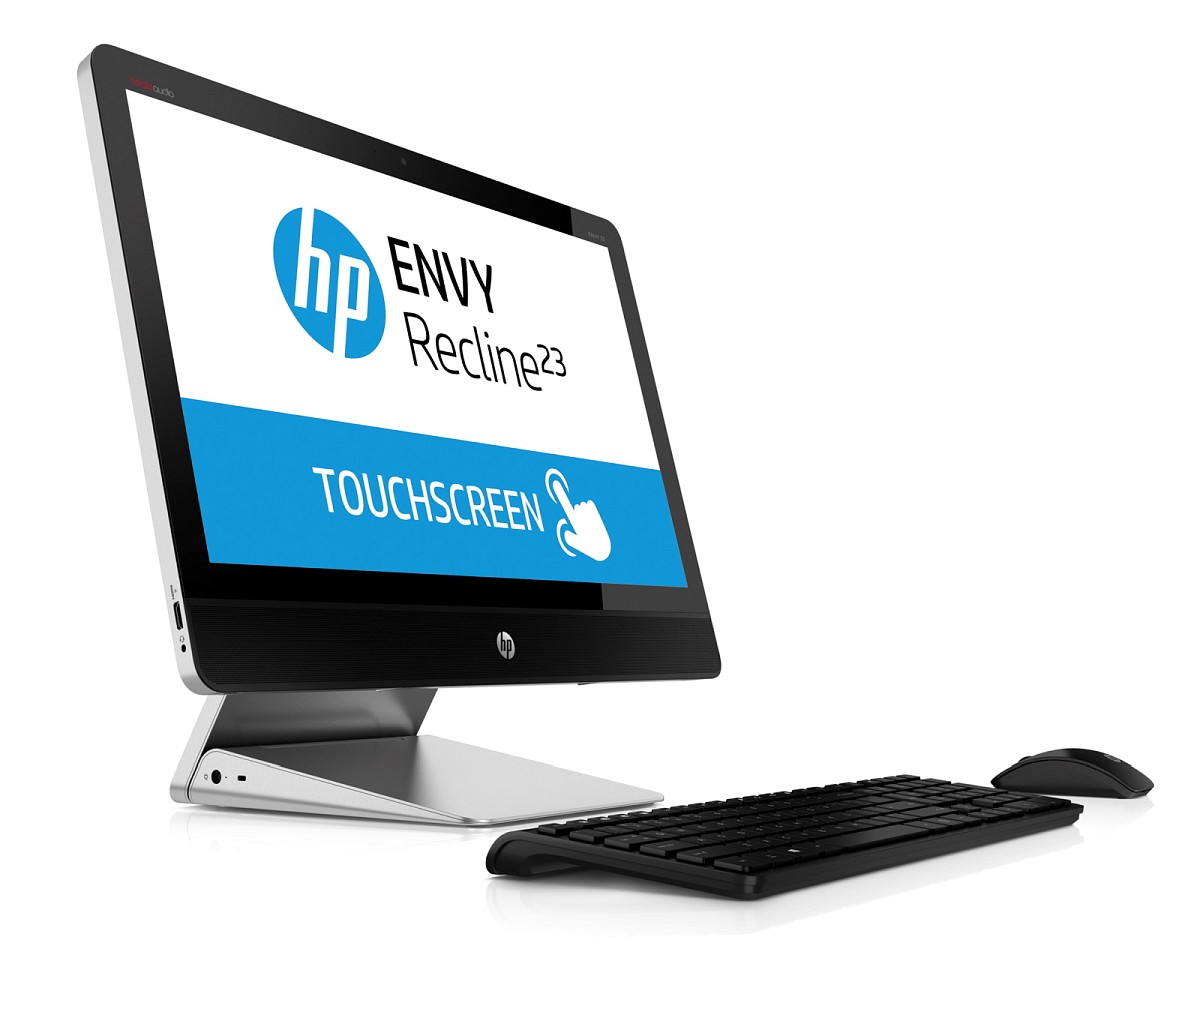 HP ENVY Recline 23-k081ec TouchSmart (F6D98EA)